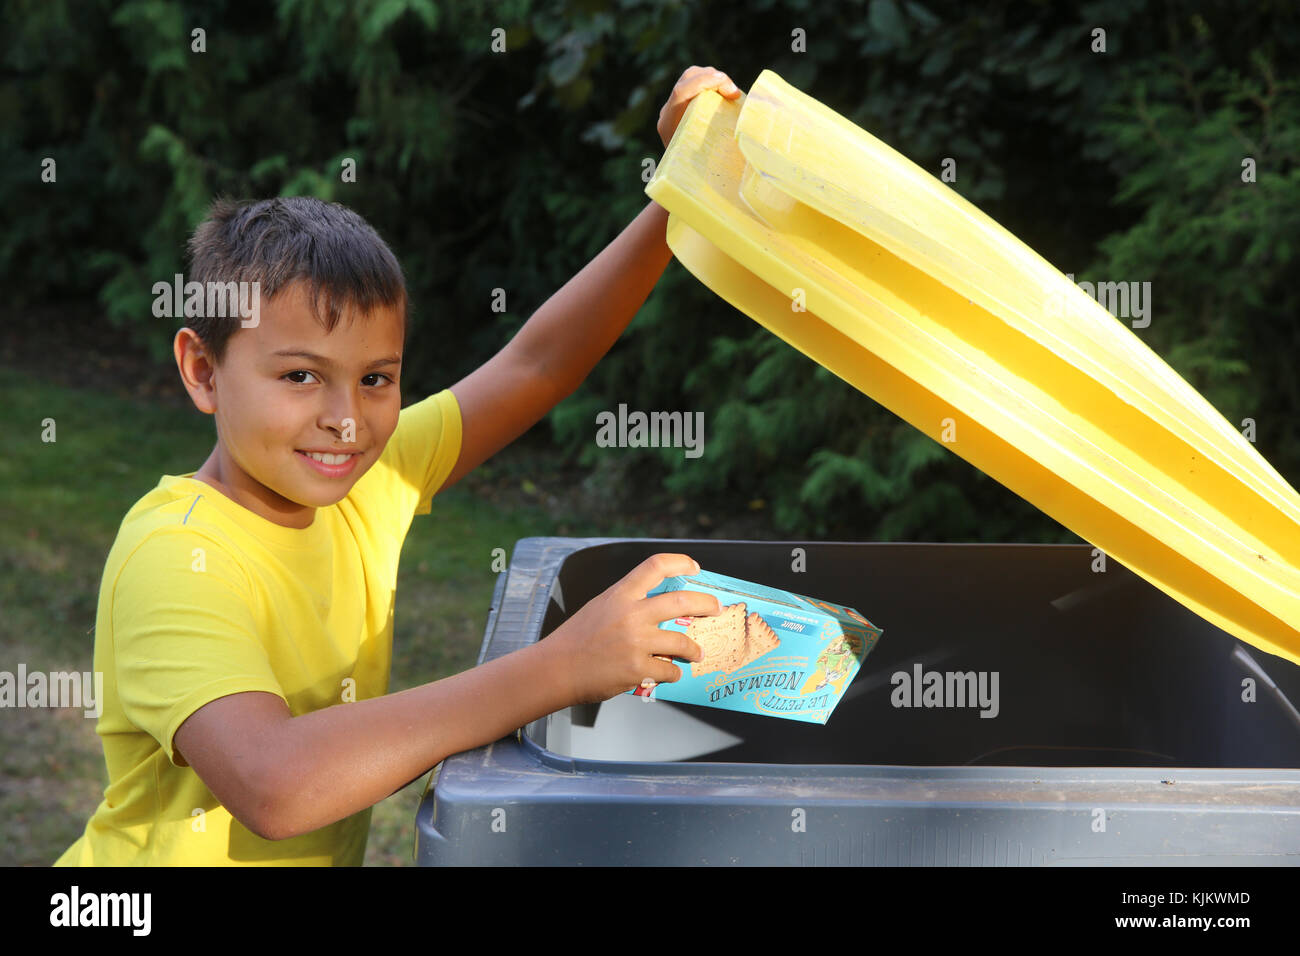 Garçon en train de lancer une boîte dans une poubelle de recyclage. La France. Banque D'Images